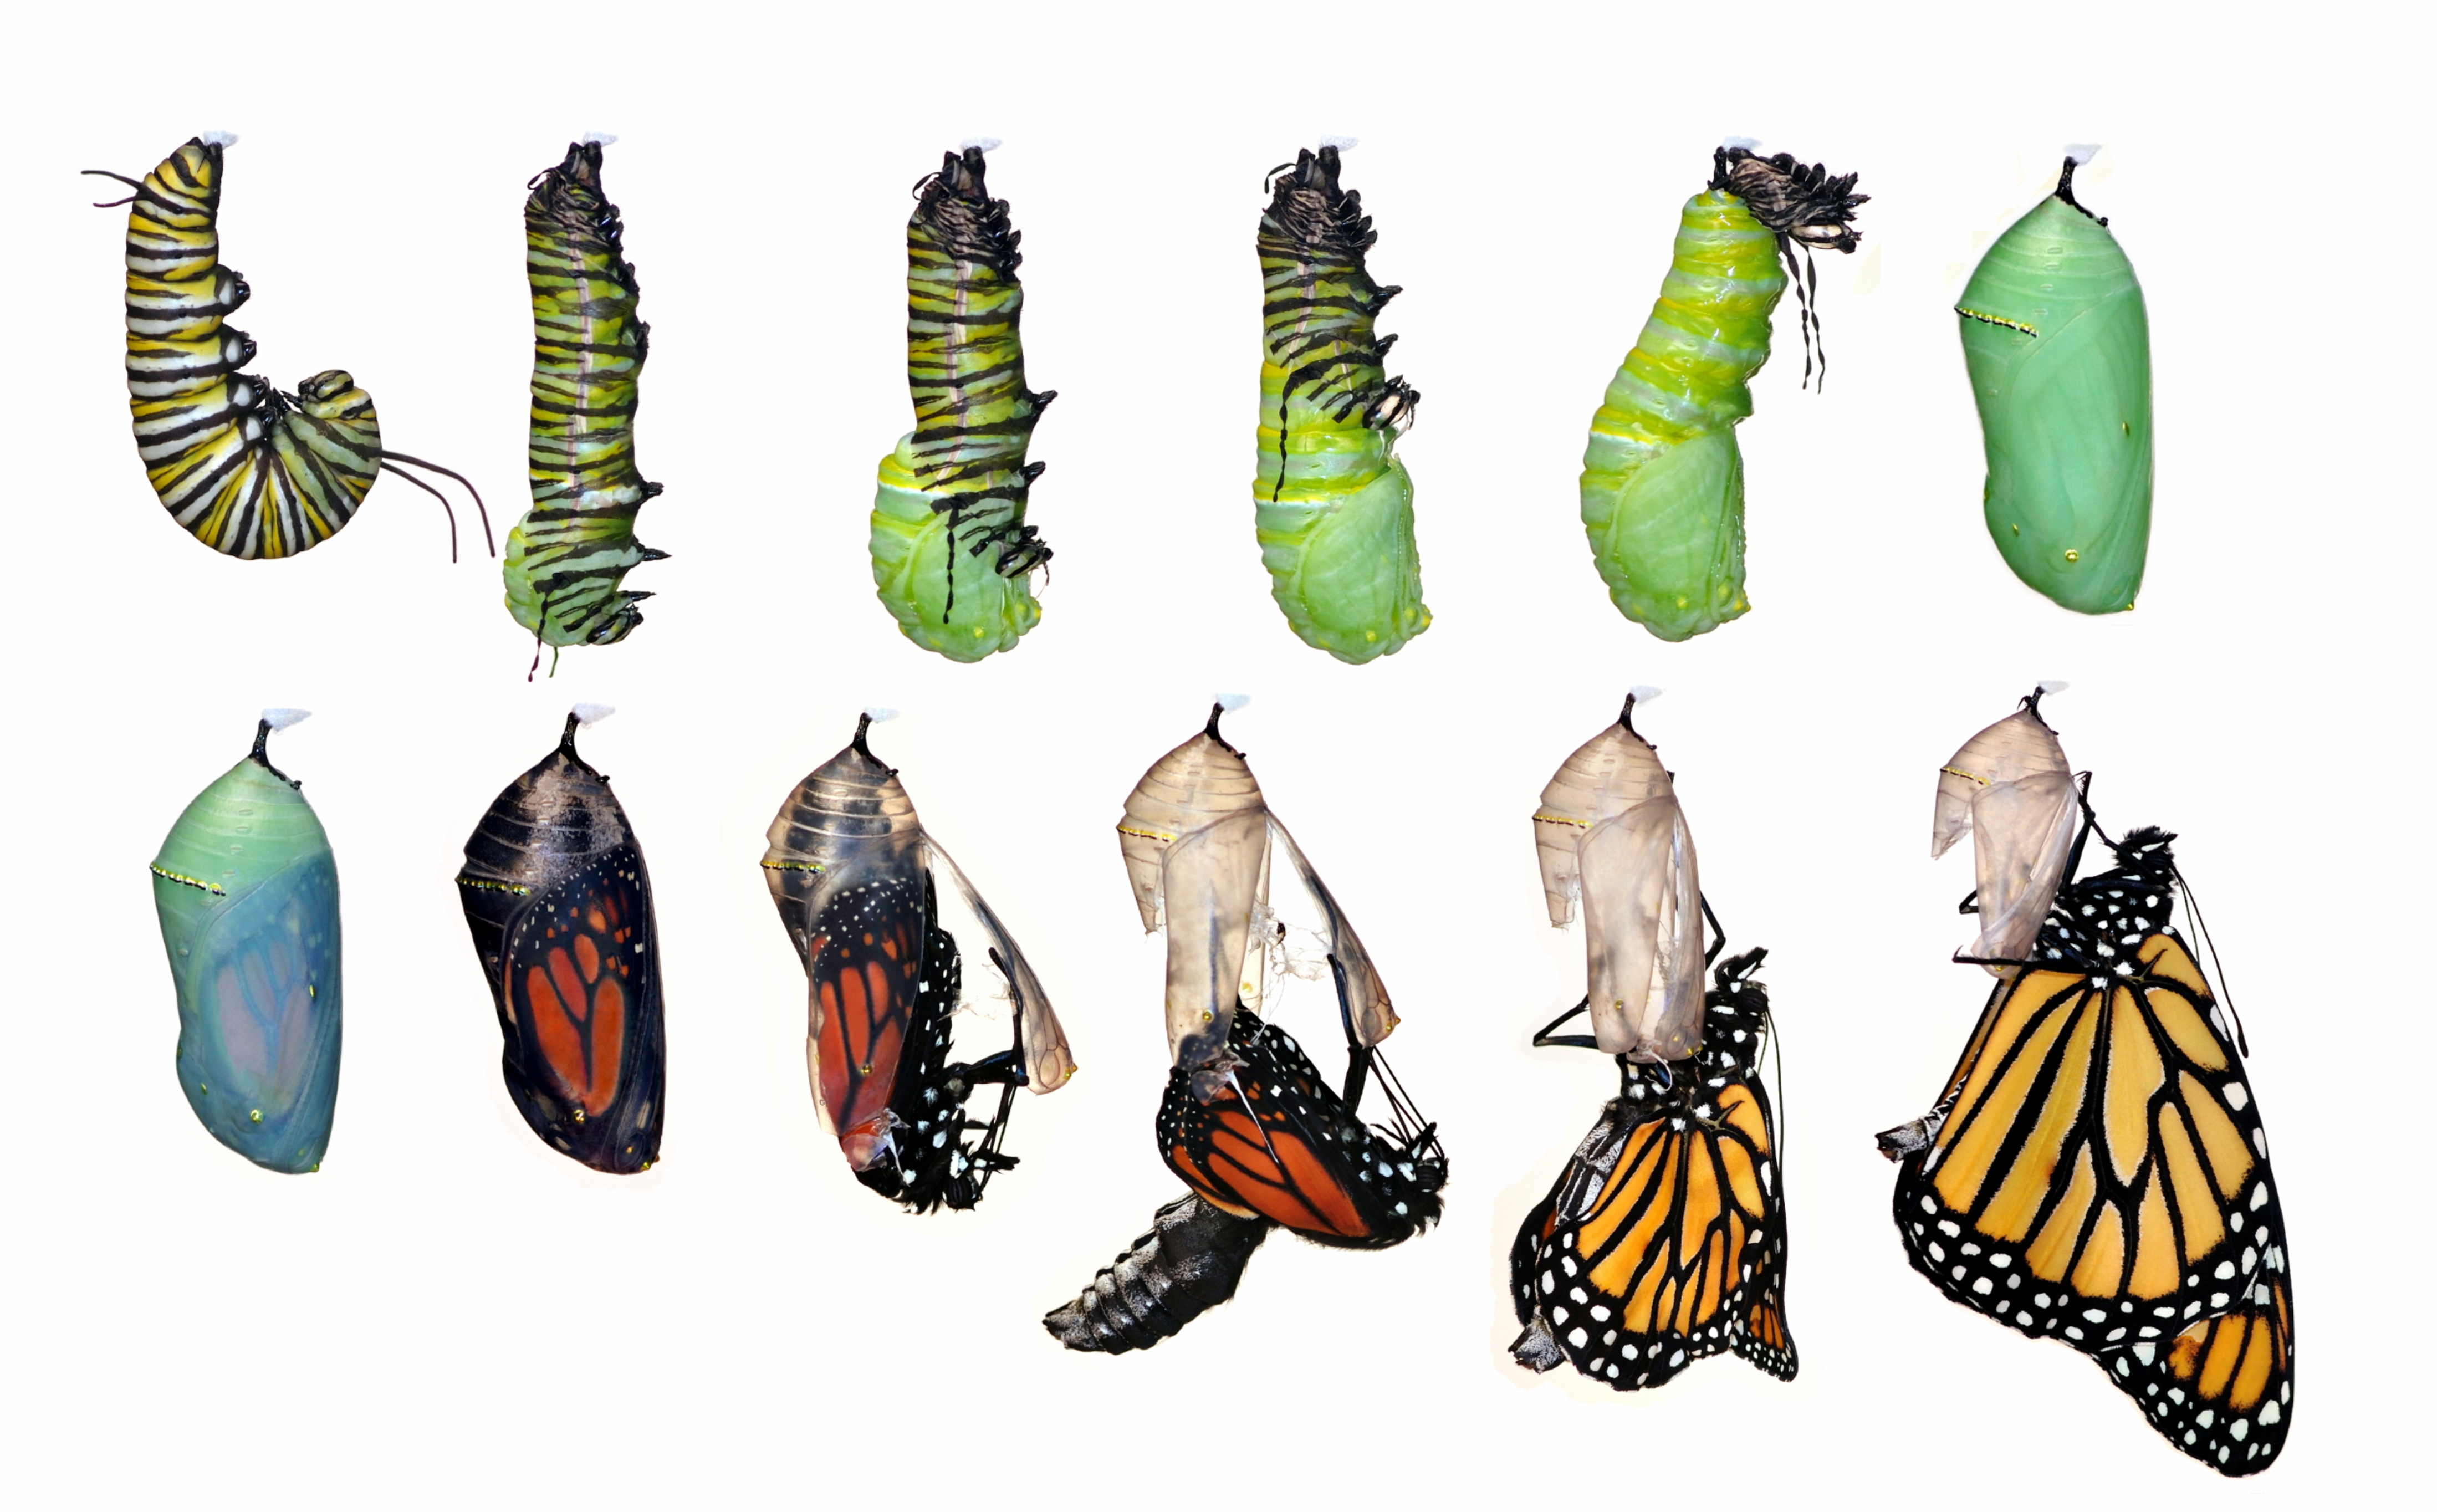 Как гусеница превращается в бабочку: все стадии появления бабочки